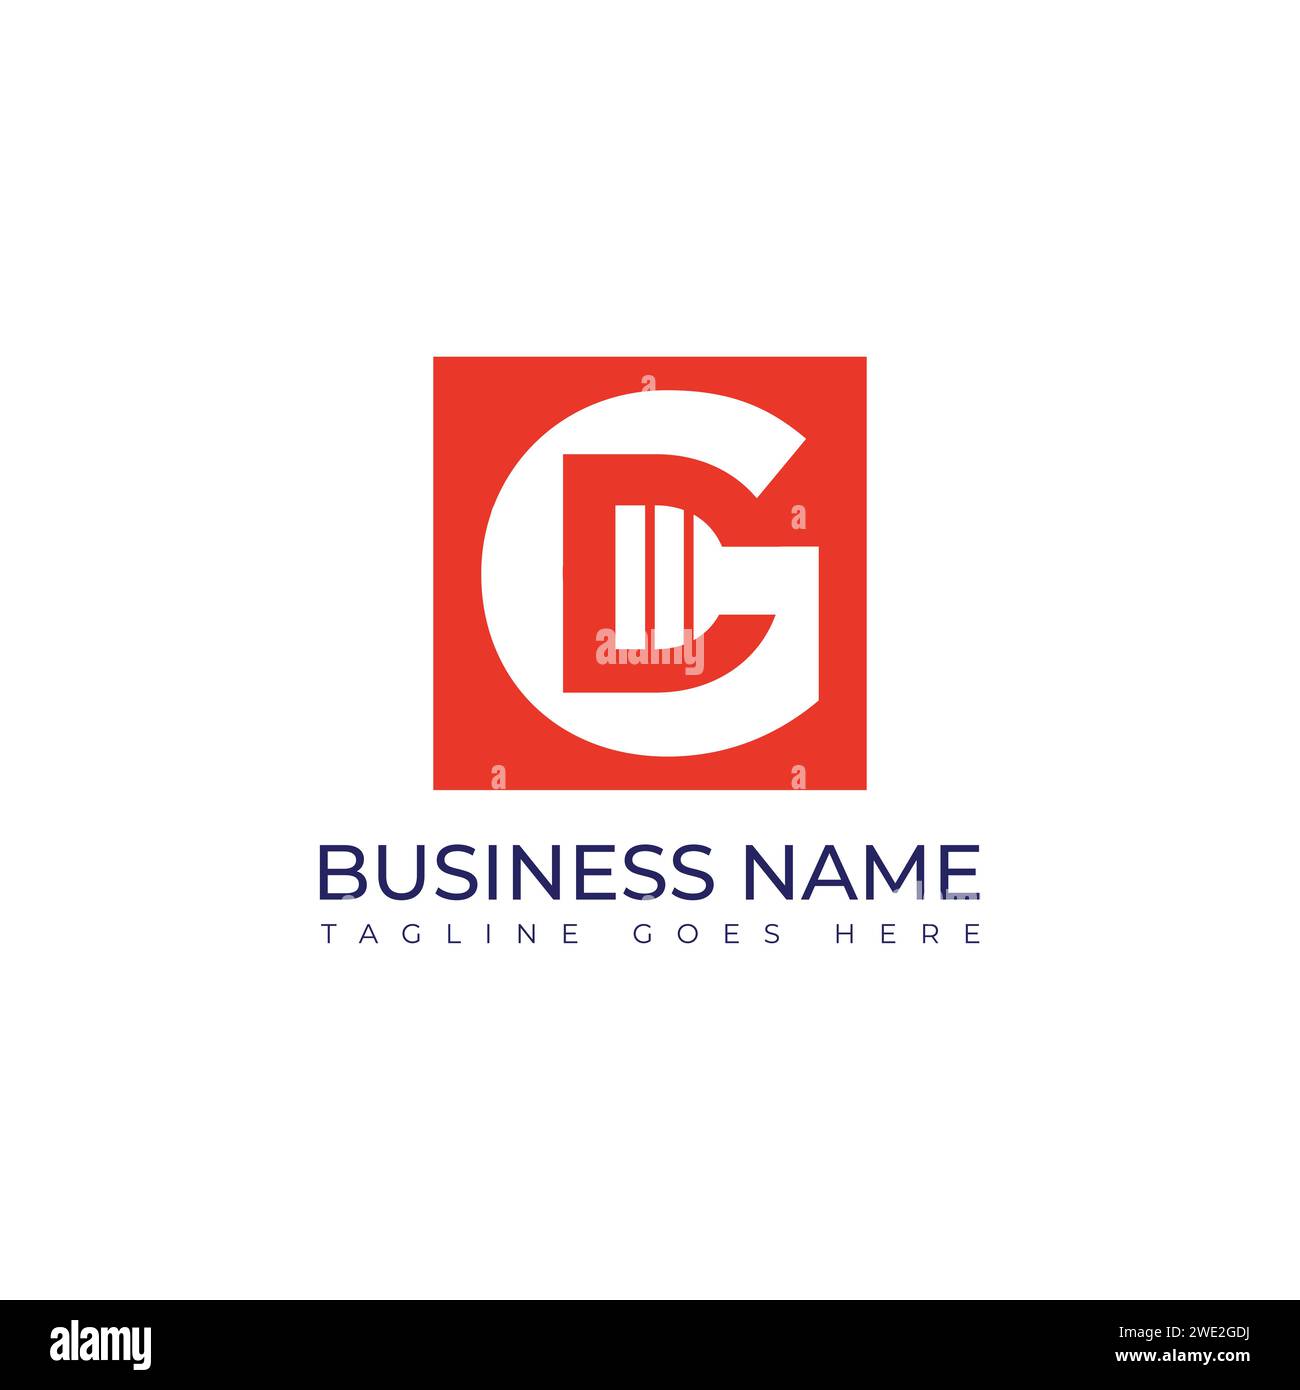 Lettera cg o gc spazio negativo moderno business aziendale moderno logo tipografico unico. spazio negativo lettera cg o gc all'interno del monogramma di forma quadrata Illustrazione Vettoriale